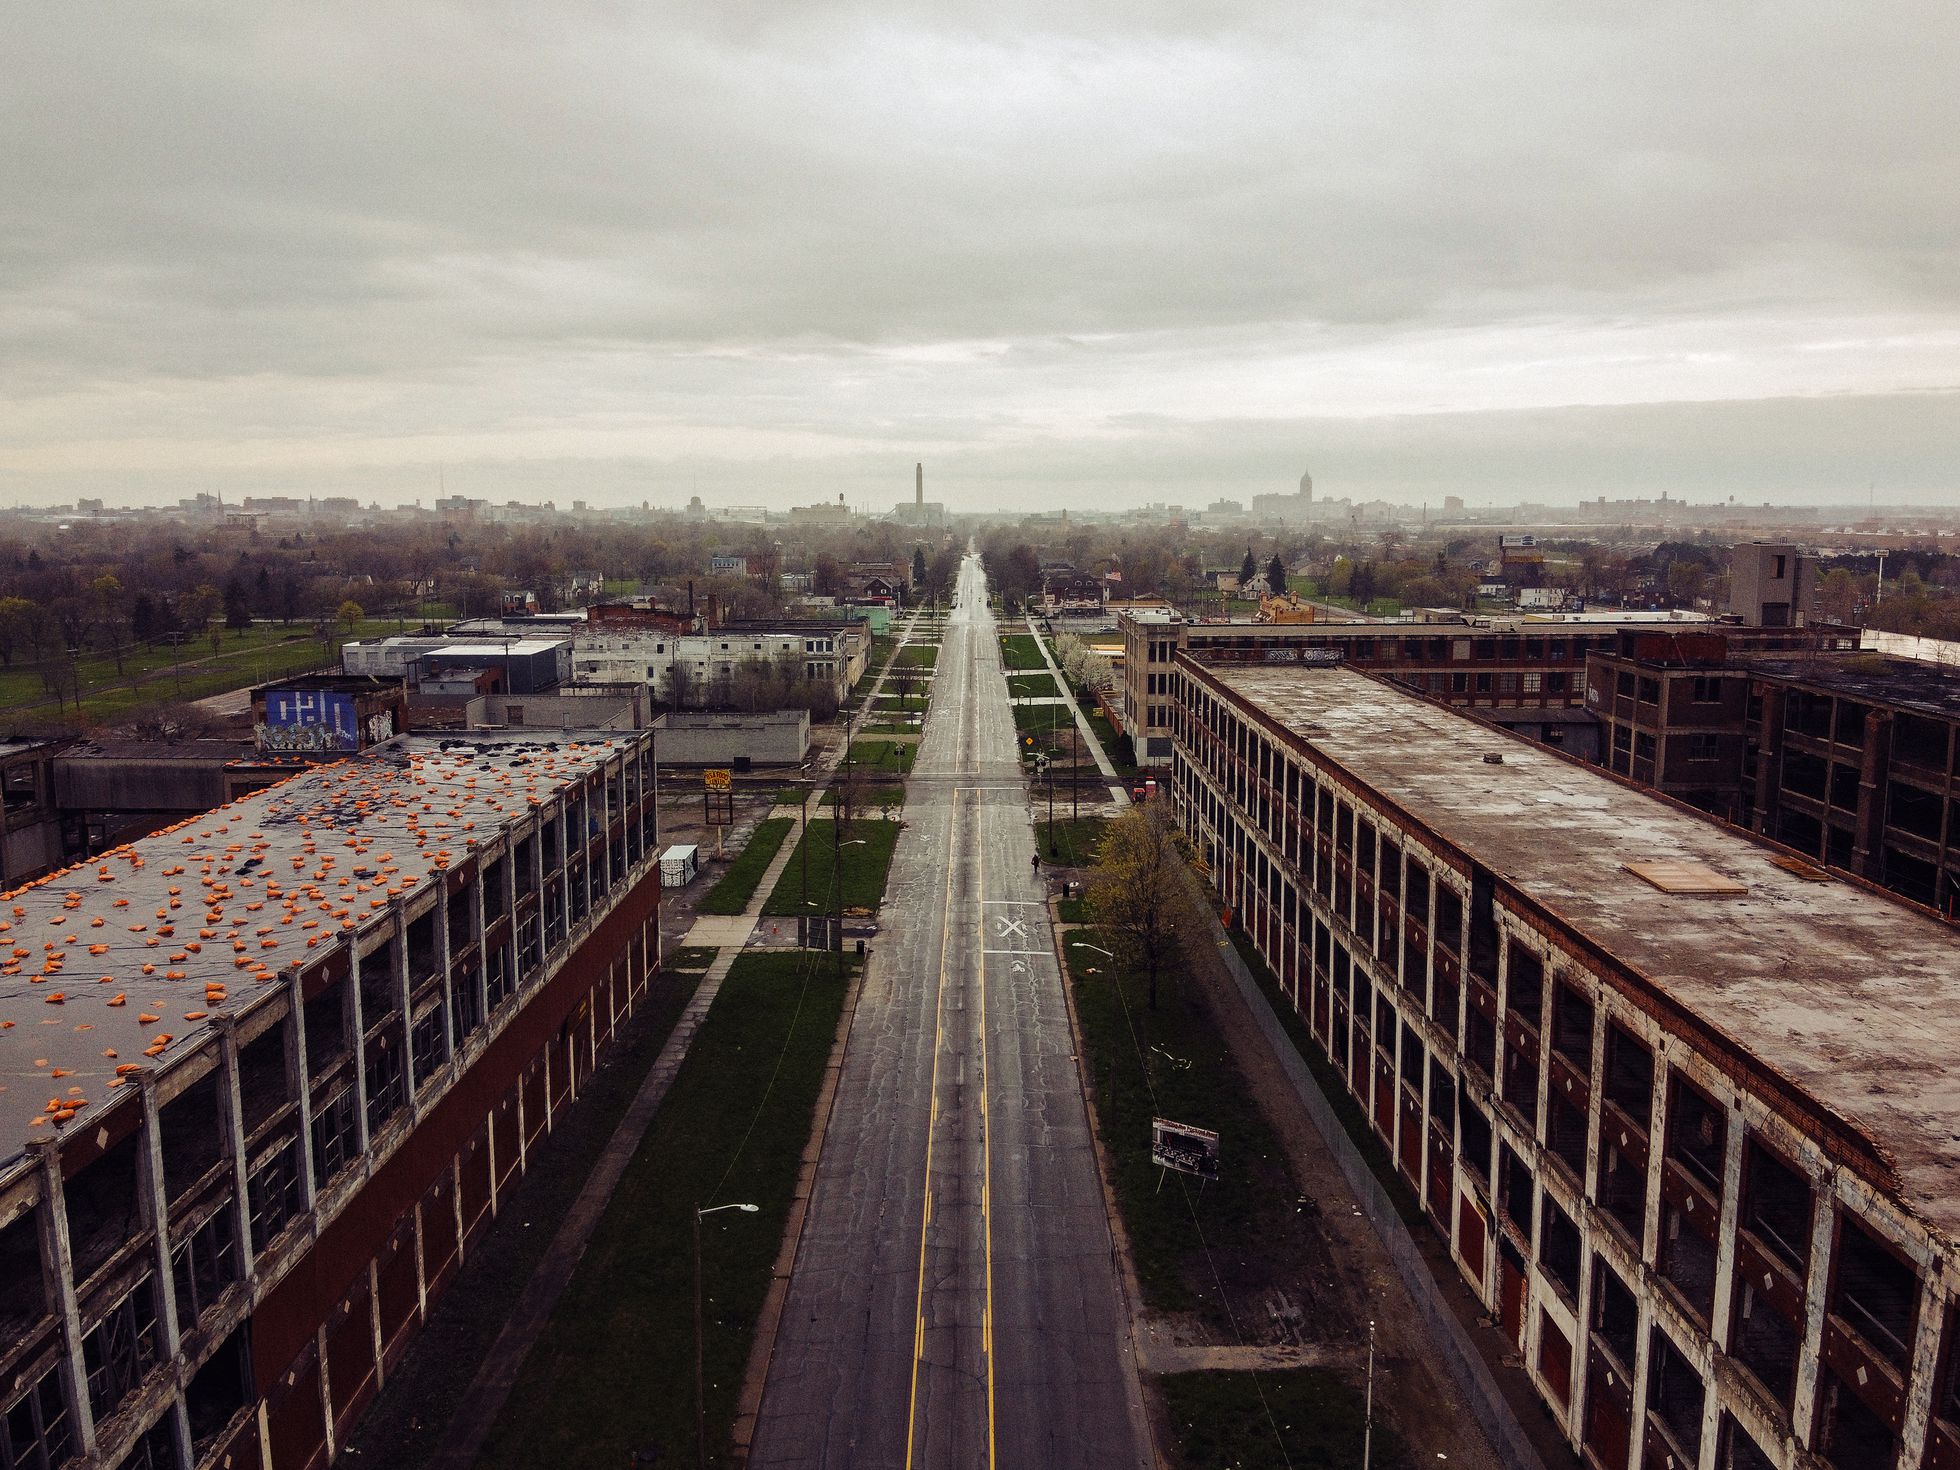 Vista aérea de una zona industrial abandonada.